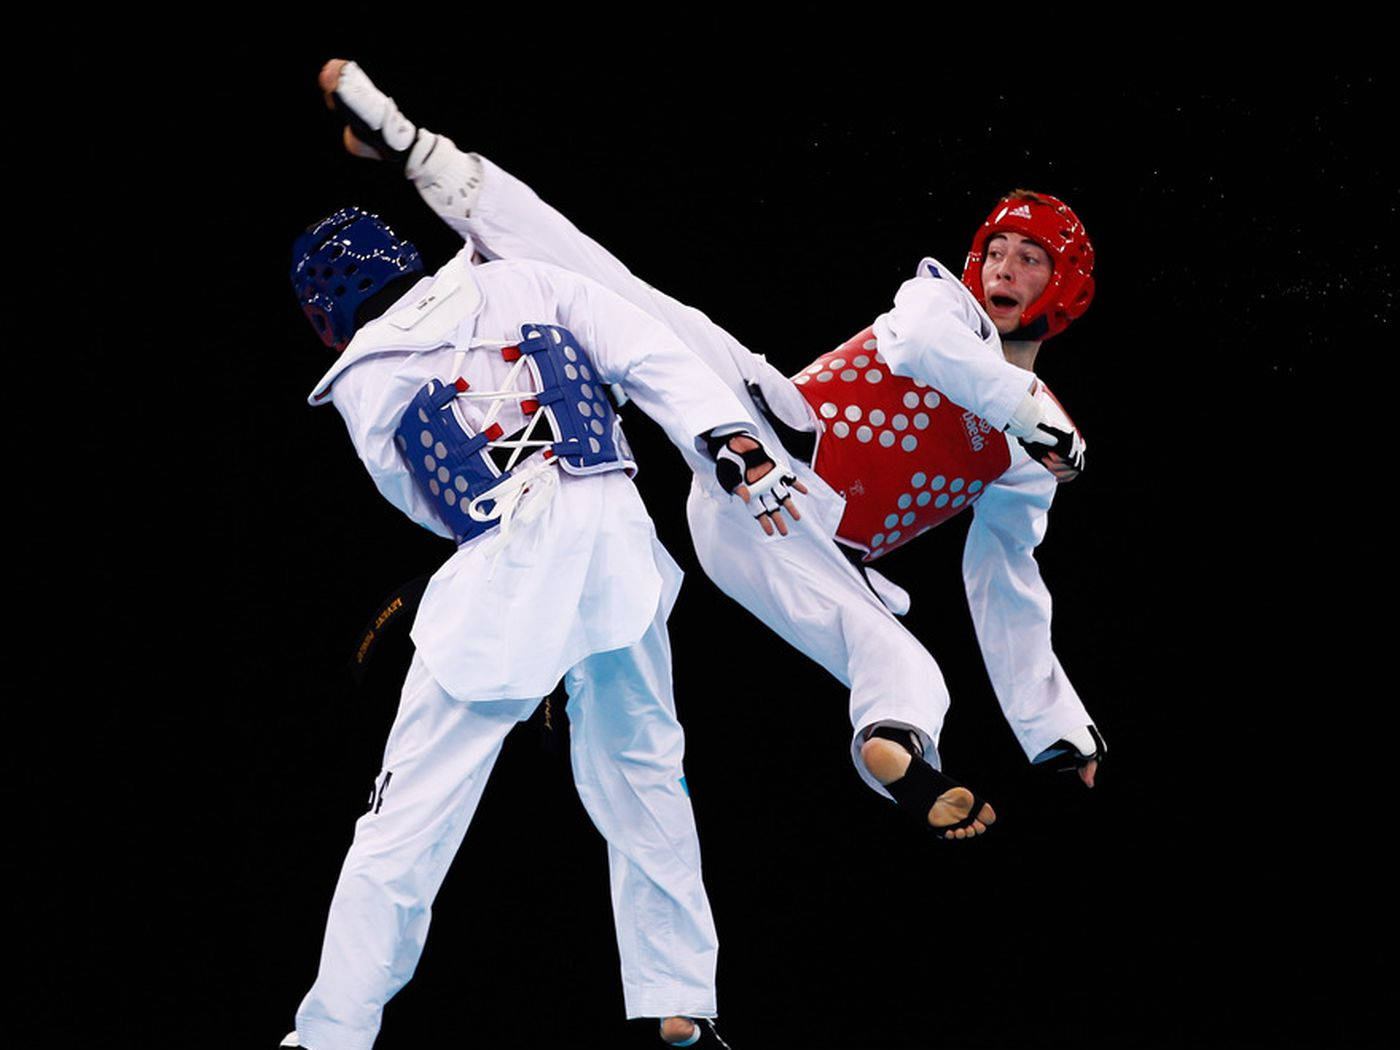 Taekwondokampf Sprung Rückwärts-seitentritt. Wallpaper